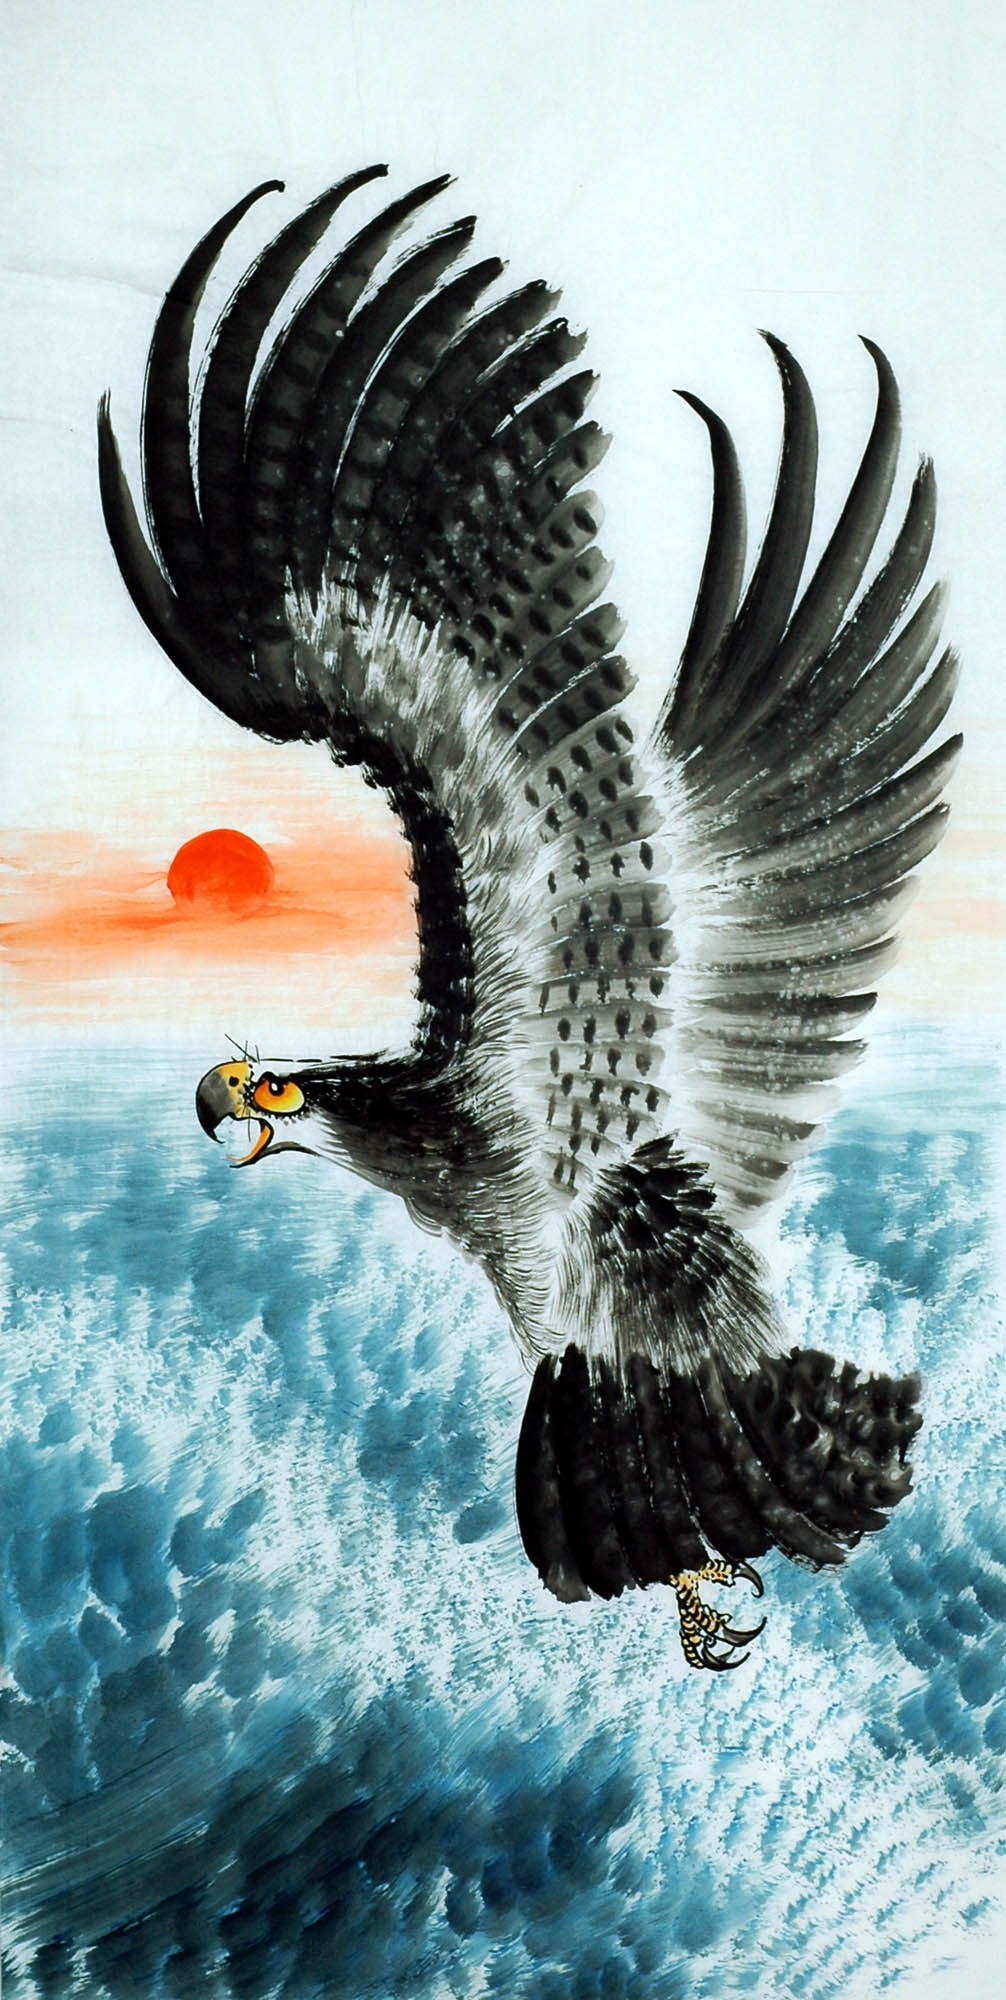 Chinese Eagle Painting - CNAG010533